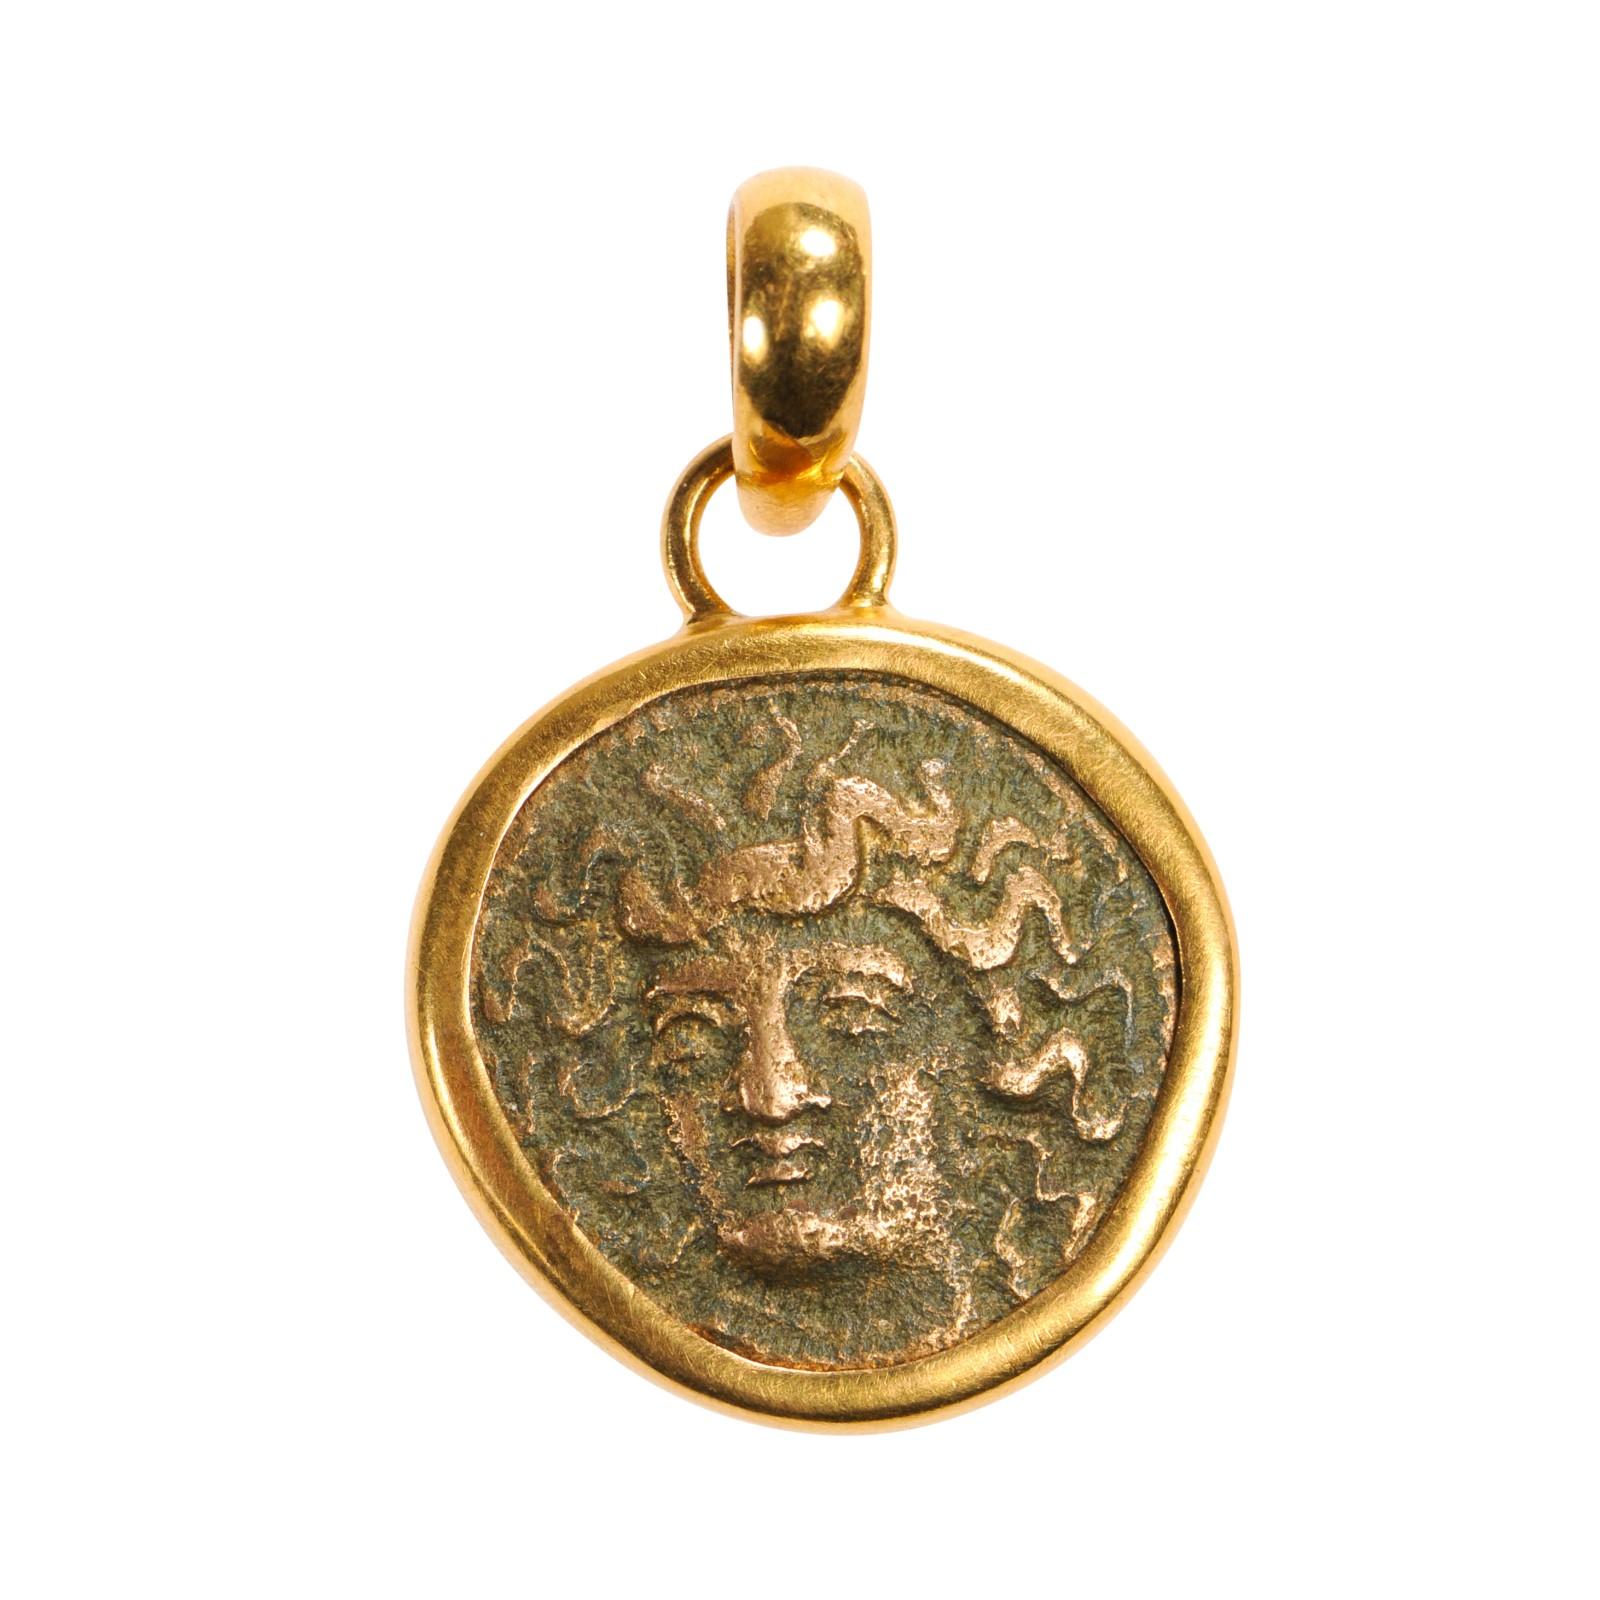 Eine authentische griechische Tetrachalkon-Bronzemünze (ca. 400-344 v. Chr.). Diese antike griechische Münze wurde in eine kundenspezifische 22-karätige Goldlünette mit 22-karätigem Goldbügel eingefasst. Die Vorderseite dieser Münze zeigt den Kopf